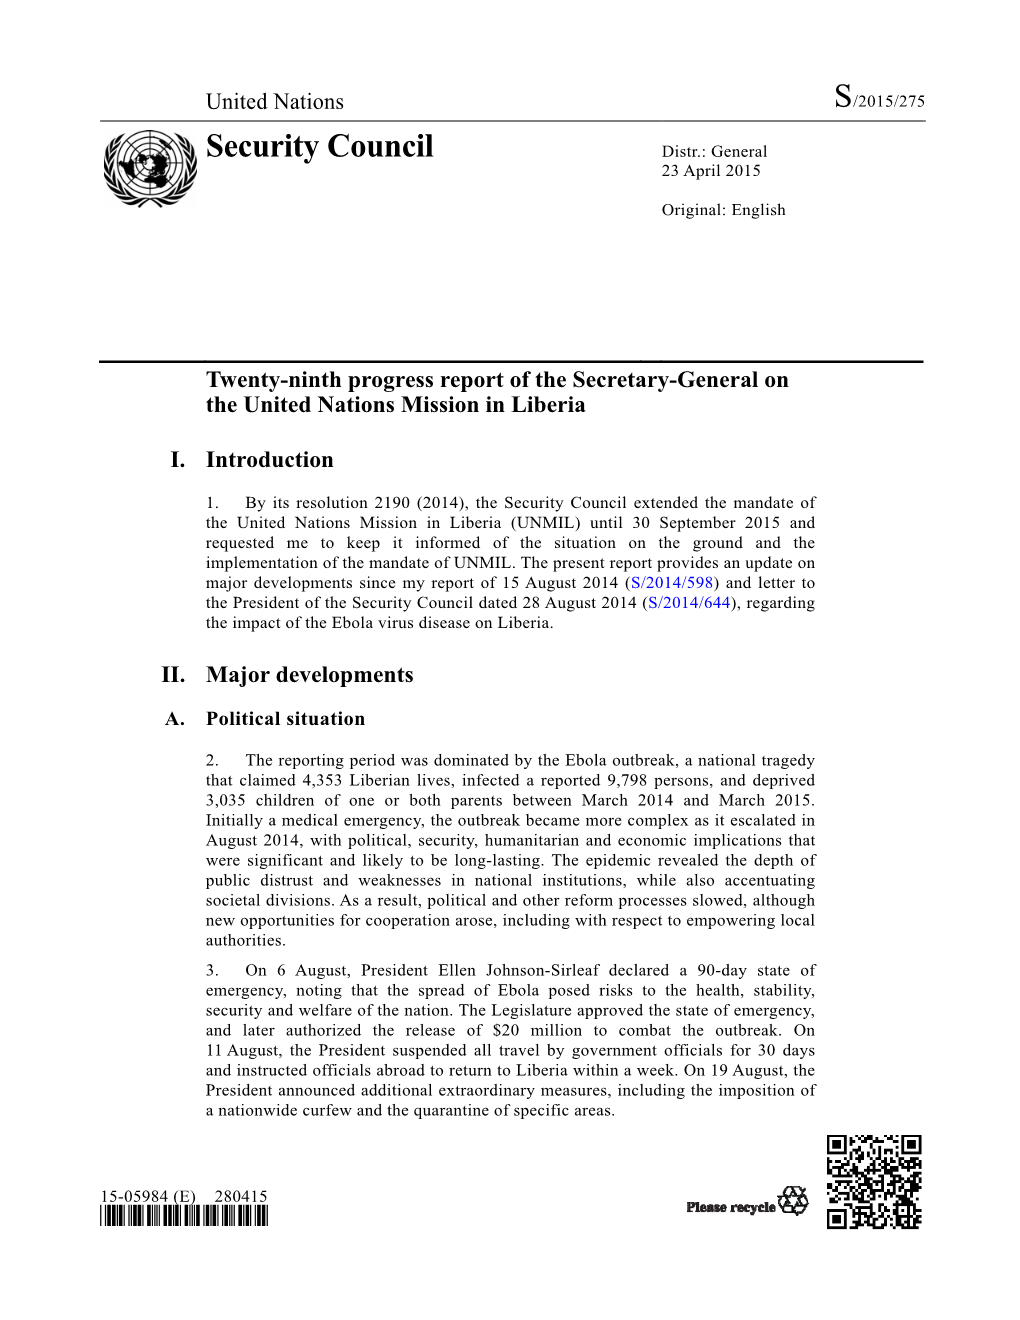 Security Council Distr.: General 23 April 2015